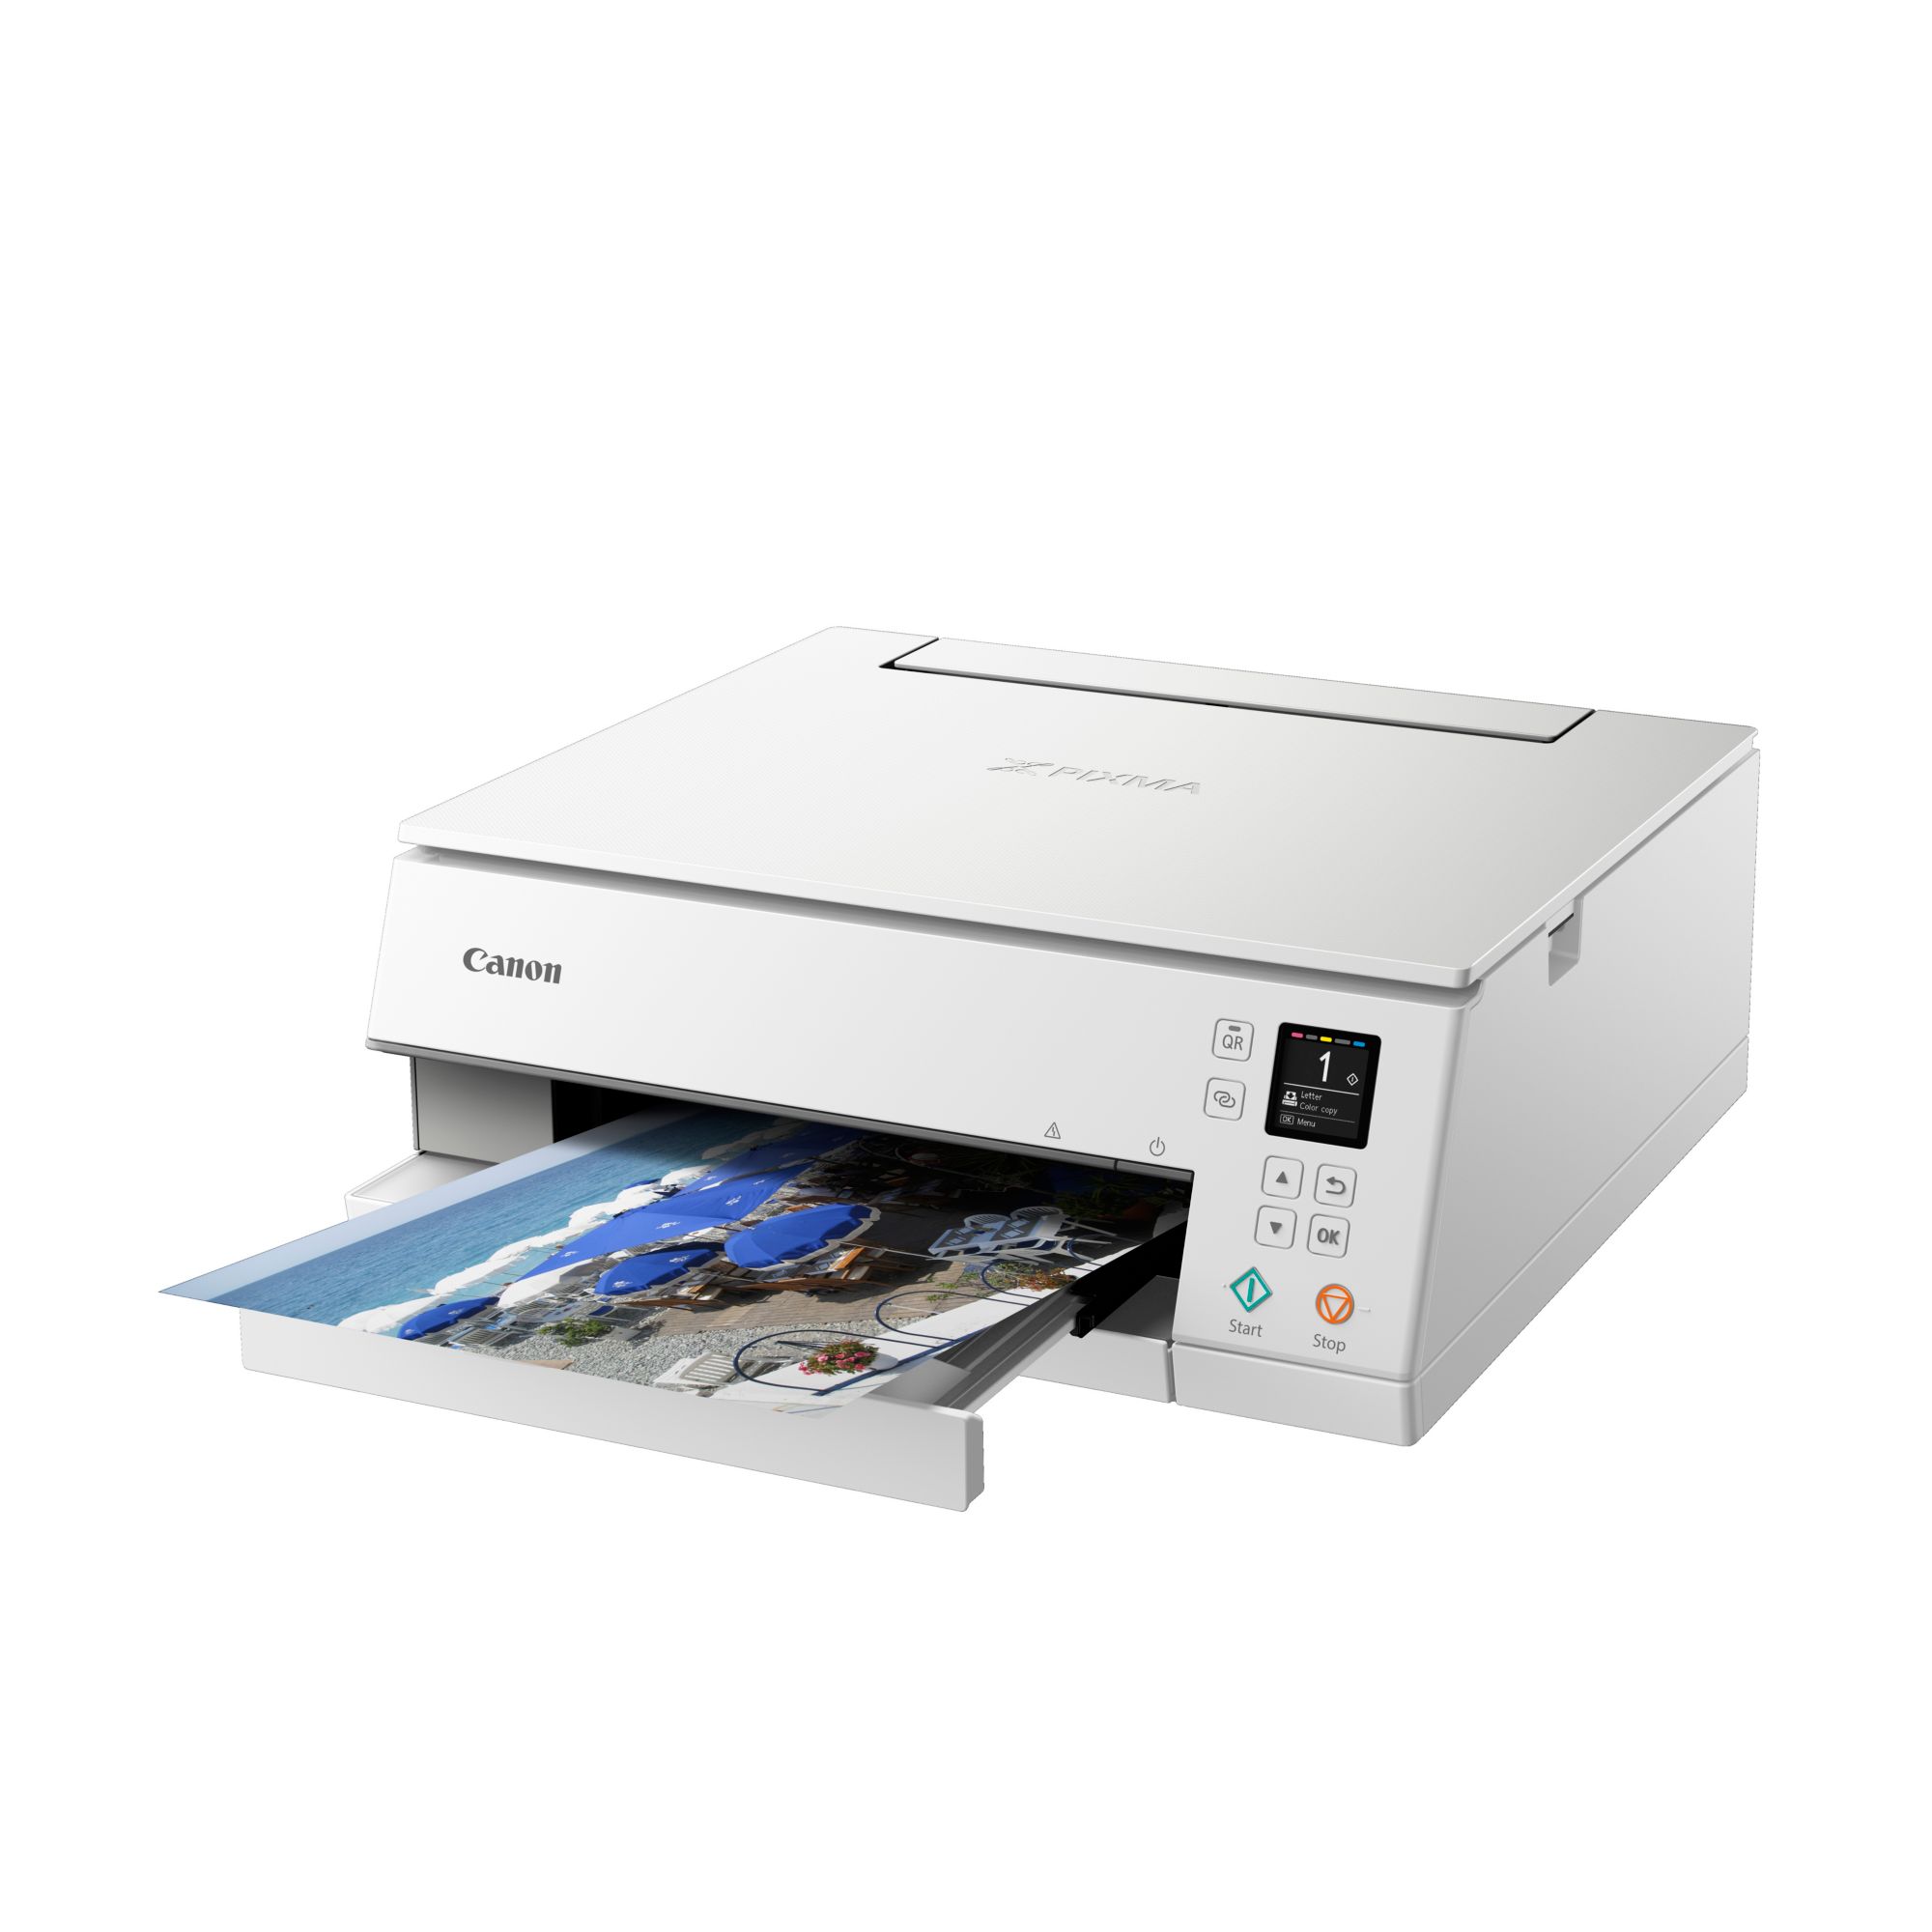 Tintenstrahl-Multifunktionsdrucker Kopierer Canon Scanner WLAN TS6351a ++ PIXMA Cyberport